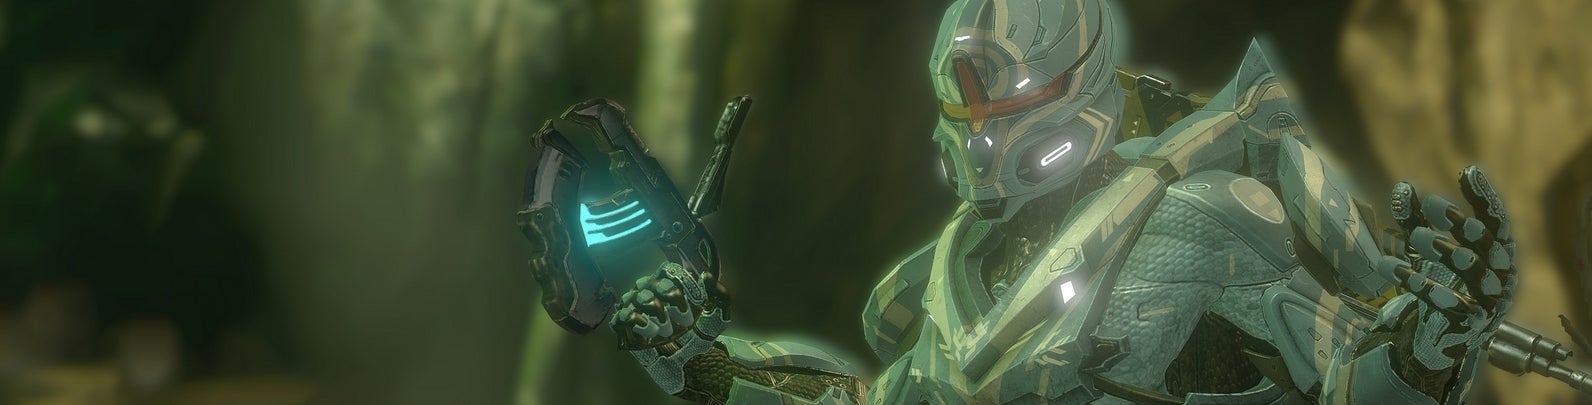 Afbeeldingen van Halo 4 's Spartan Ops is terug